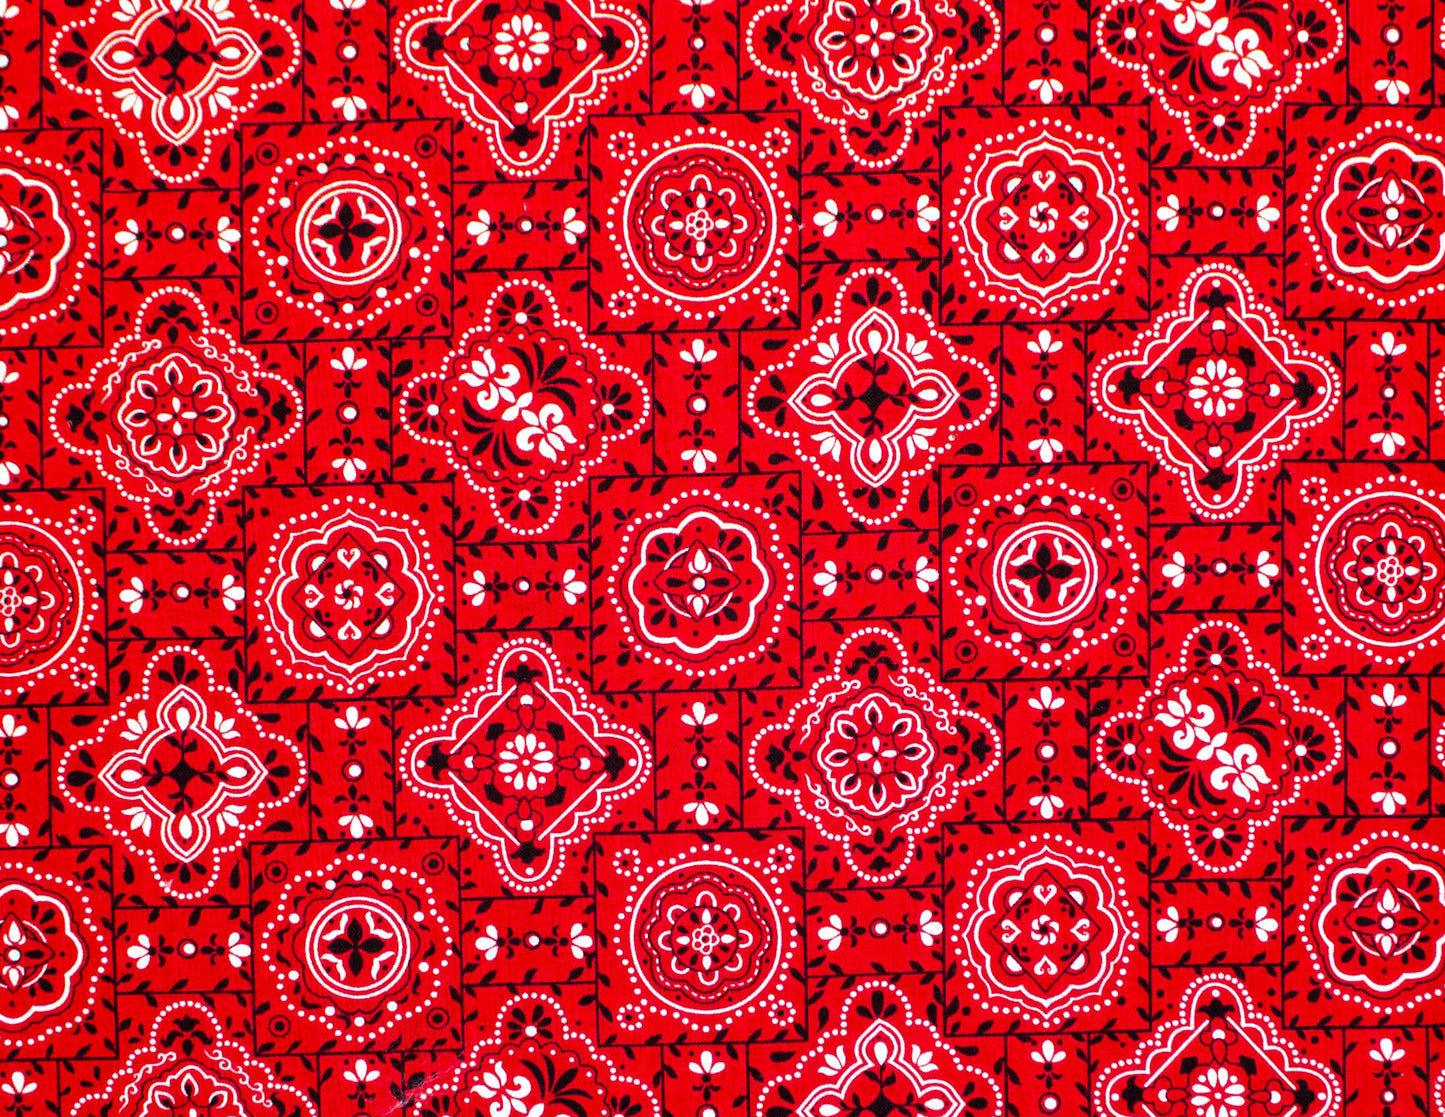 Red bandana (204)